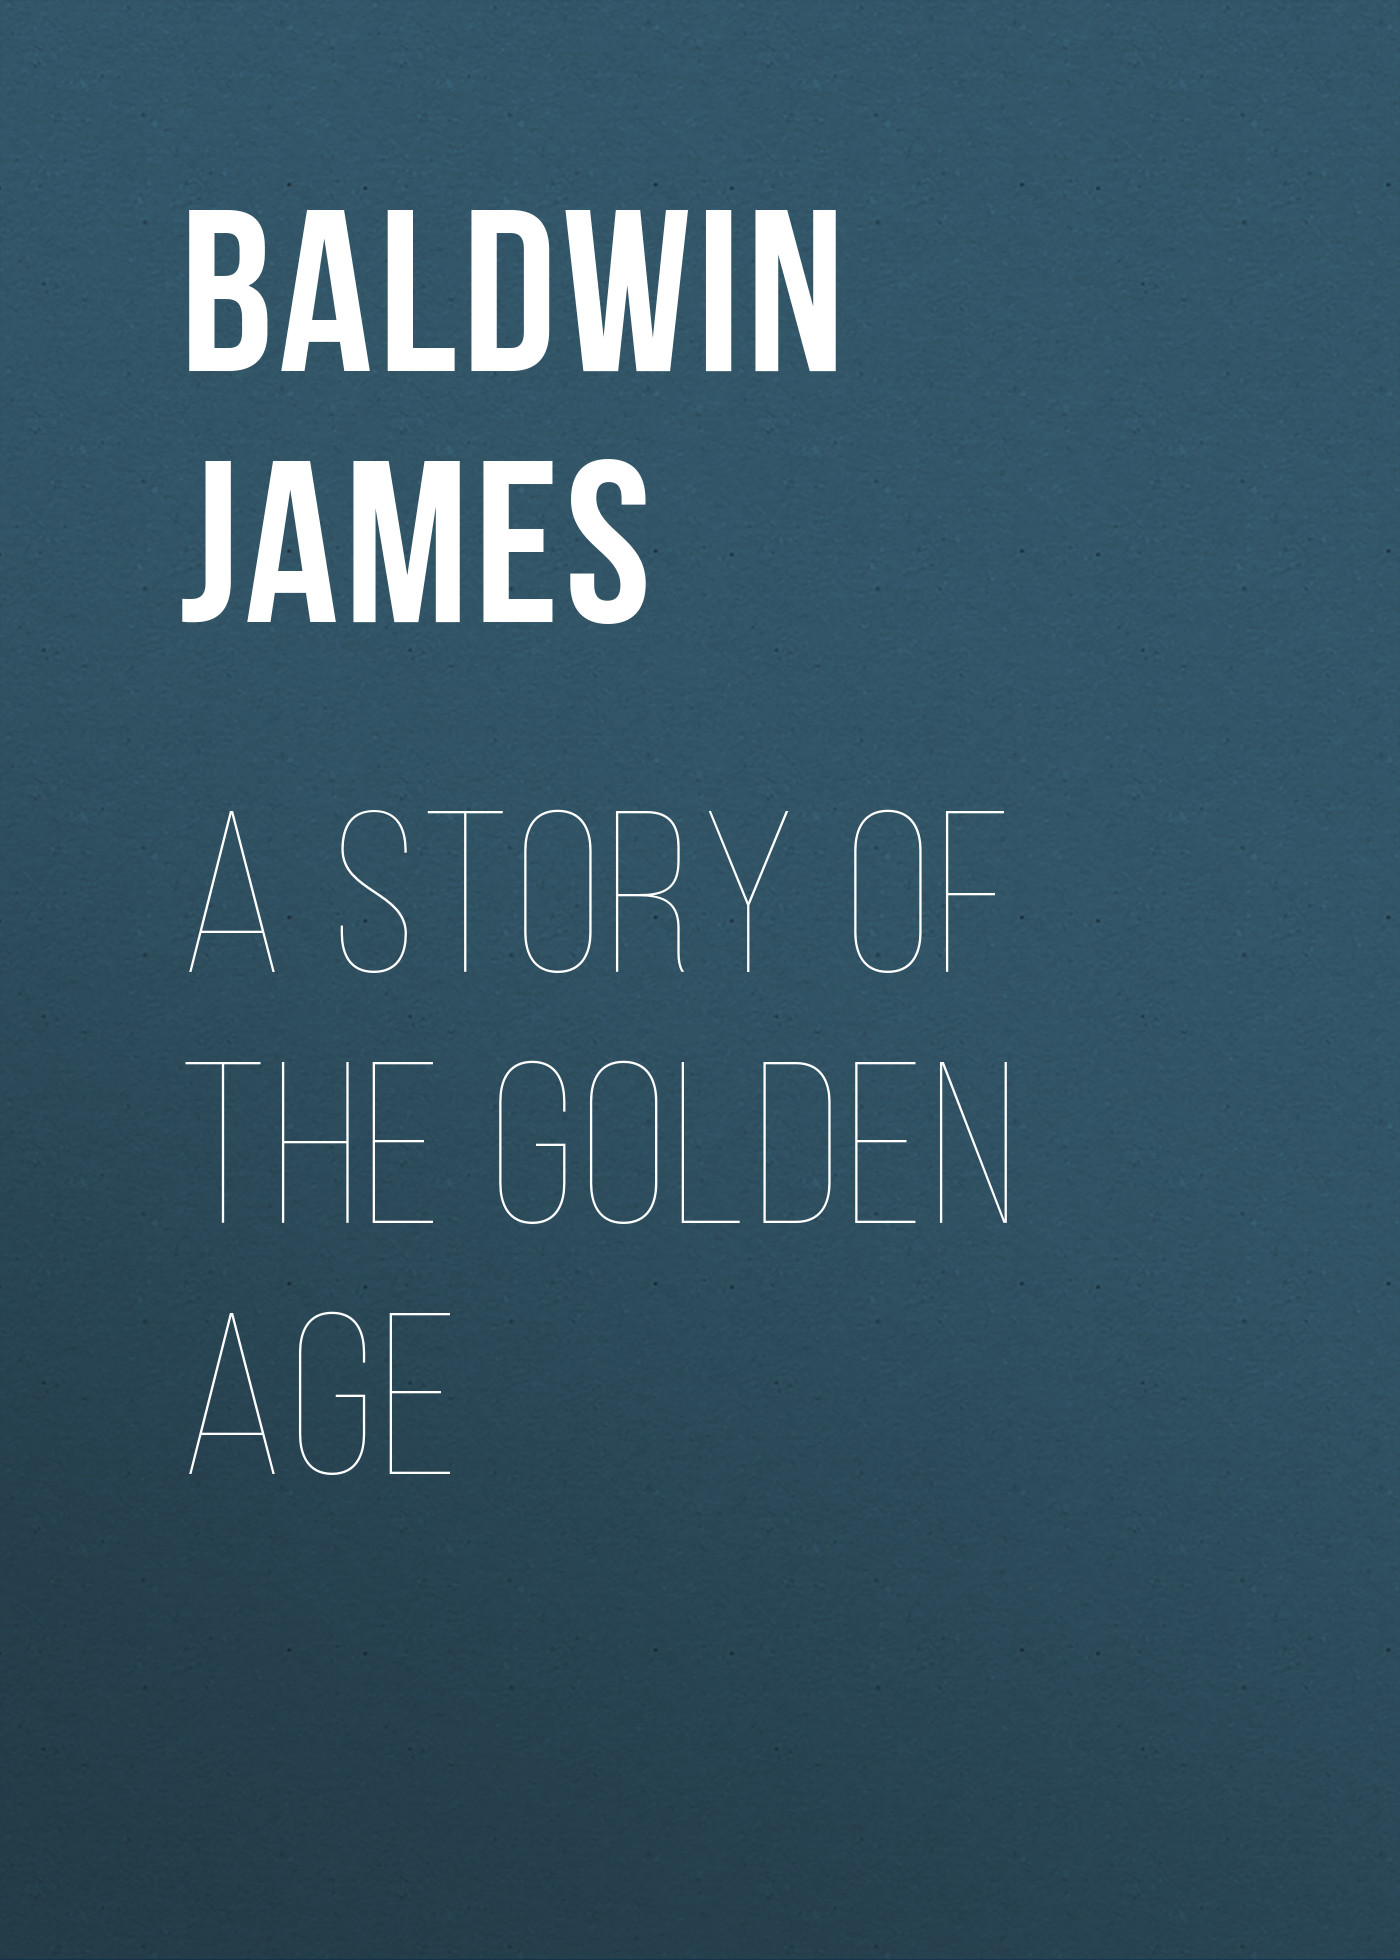 Книга A Story of the Golden Age из серии , созданная James Baldwin, может относится к жанру Зарубежная старинная литература, Зарубежная классика. Стоимость электронной книги A Story of the Golden Age с идентификатором 25292379 составляет 0 руб.